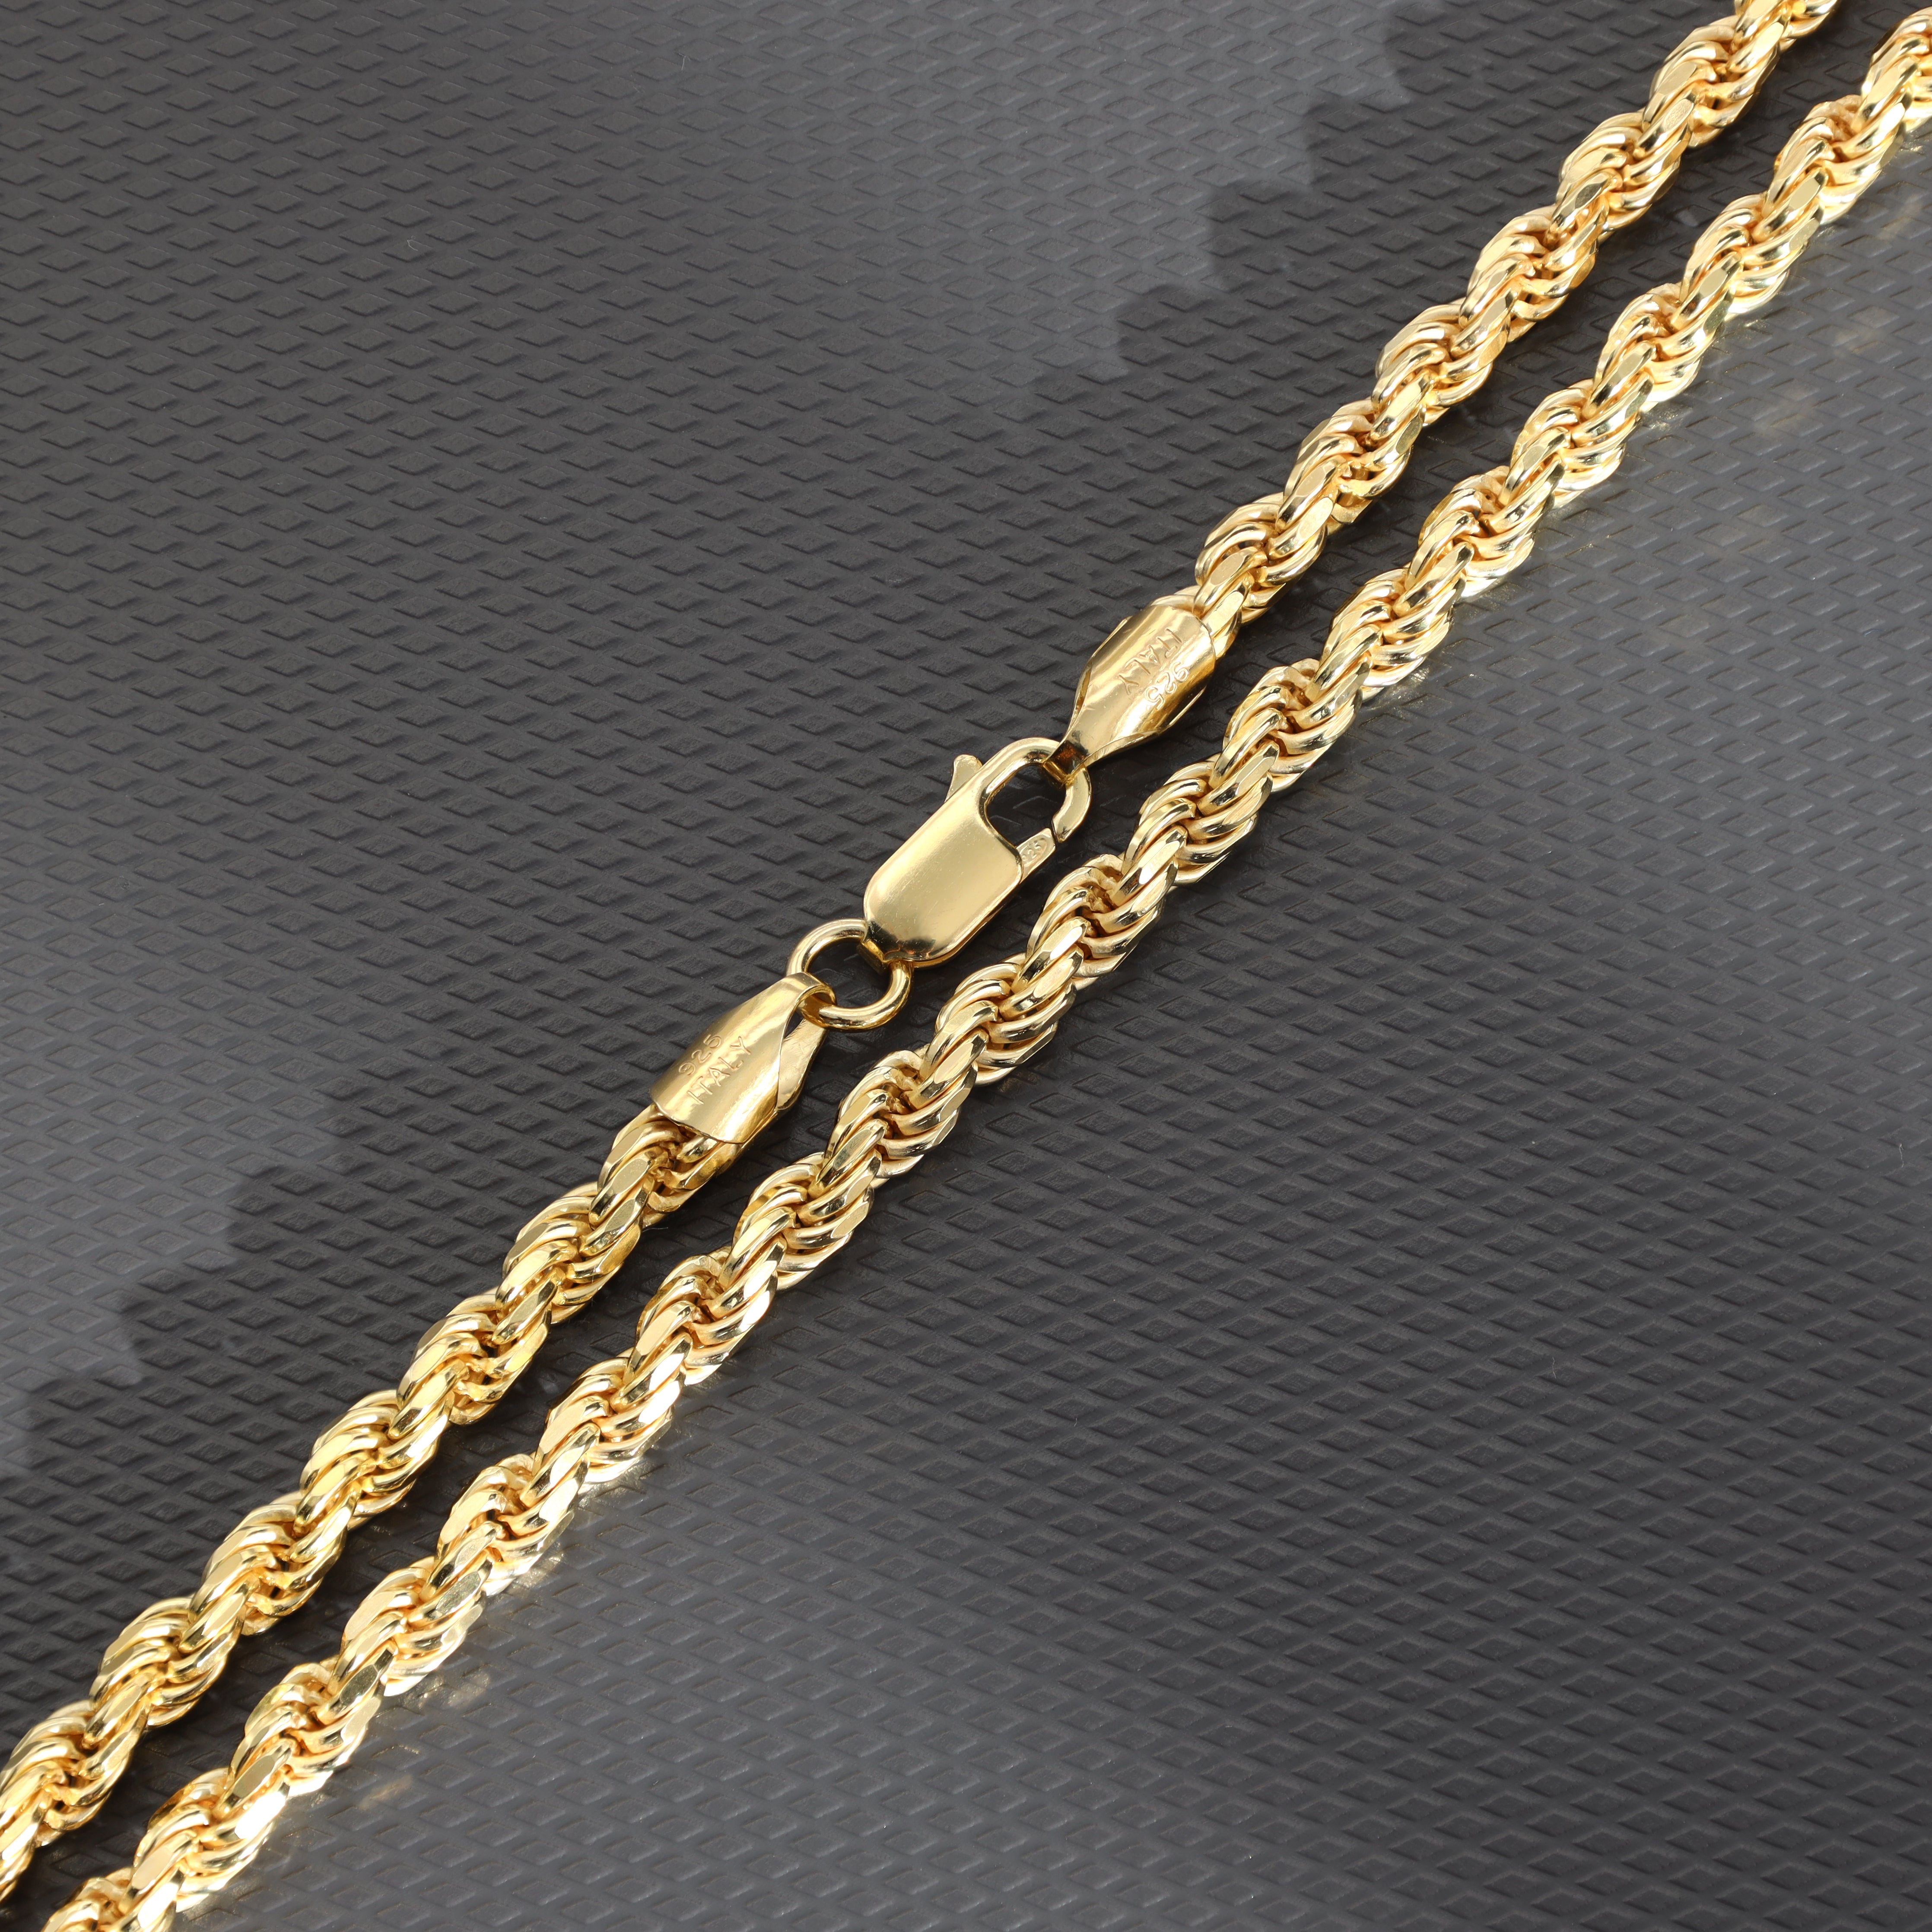 Vergoldete Rope Chain Kordelkette 4mm breit 55cm lang aus 925 Sterlingsilber (K688) - Taipan Schmuck